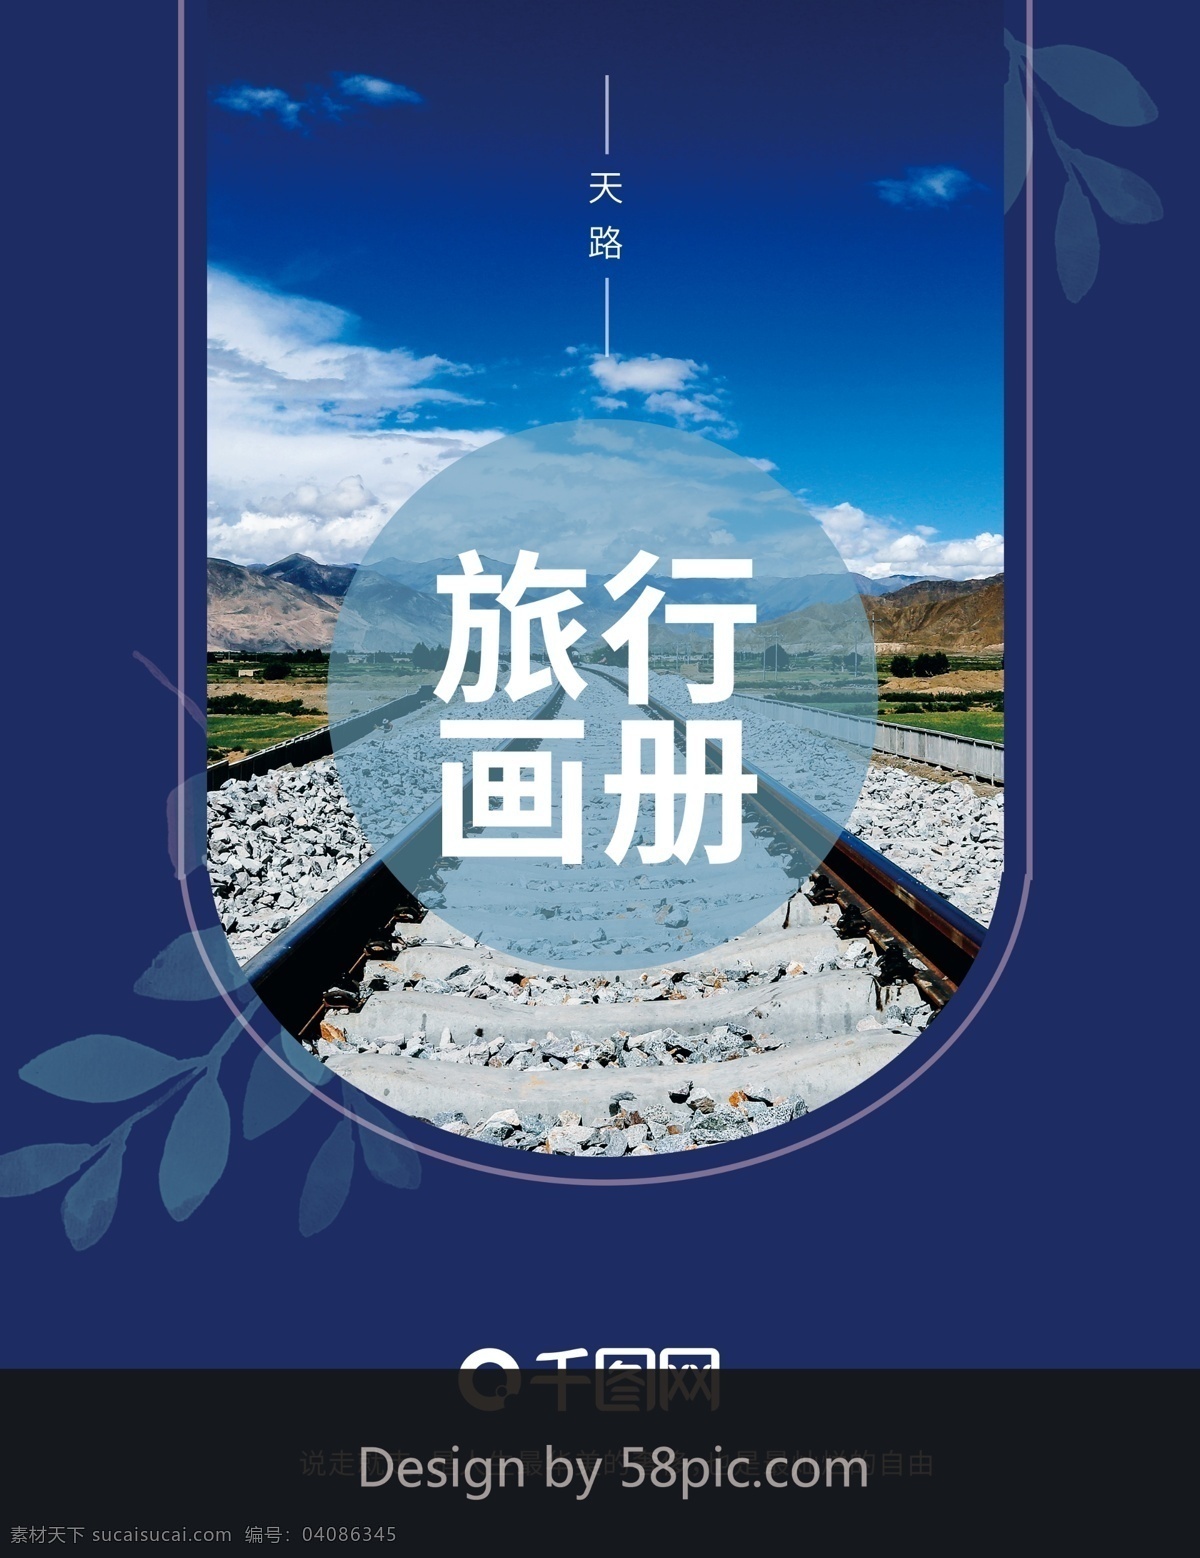 蓝色 旅游 商务 企业 宣传画册 封面 旅行 企业画册 宣传册